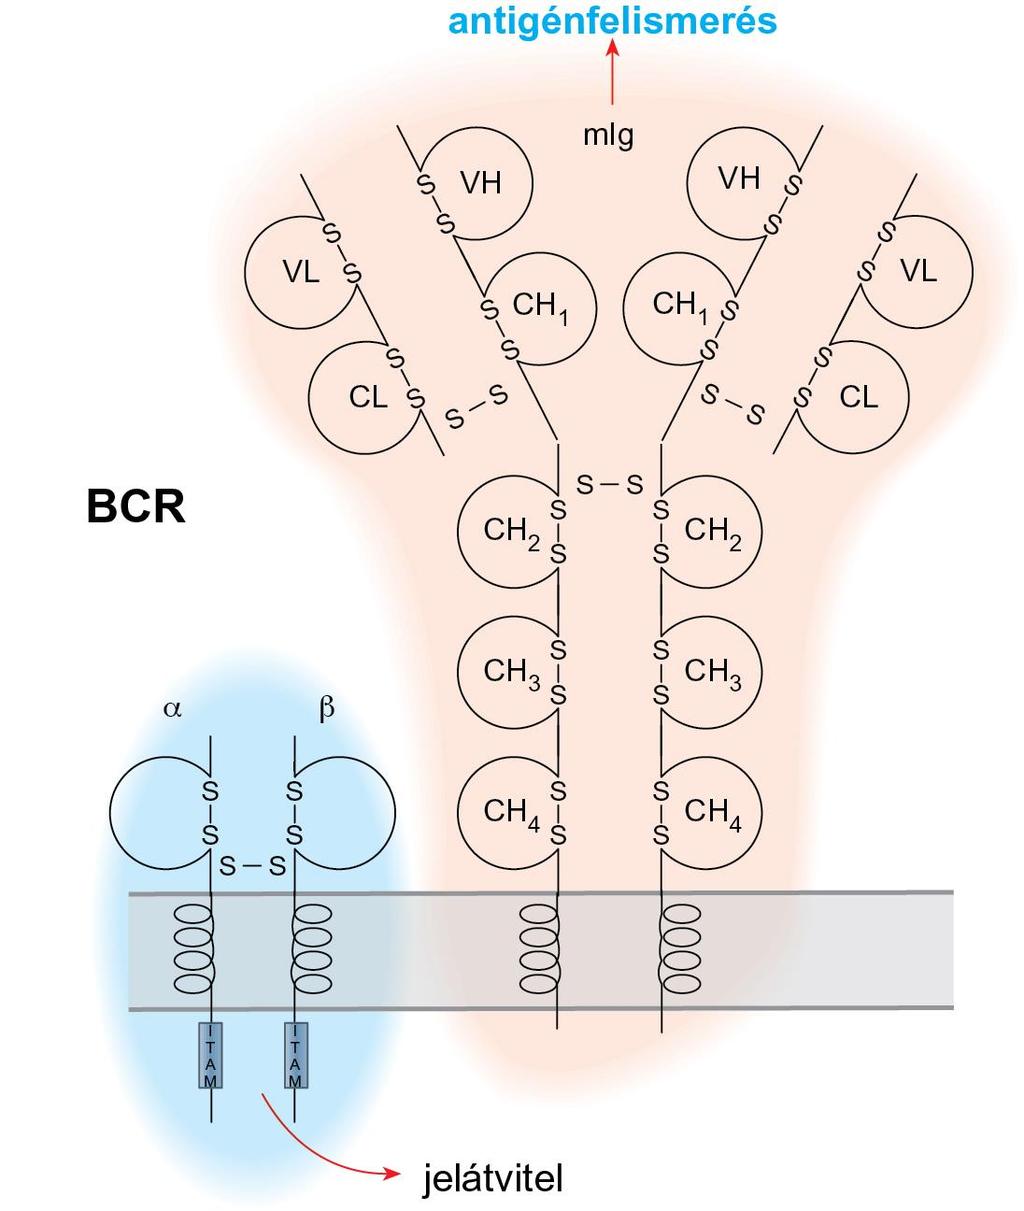 A B-sejtek antigén-felismerő receptorai, amelyek a sejtfelszíni immunglobulin molekulákból és az ezekhez kapcsolódó Ig-α-Ig-β heterodimer láncokból állnak, két funkciót látnak el: közvetítik az